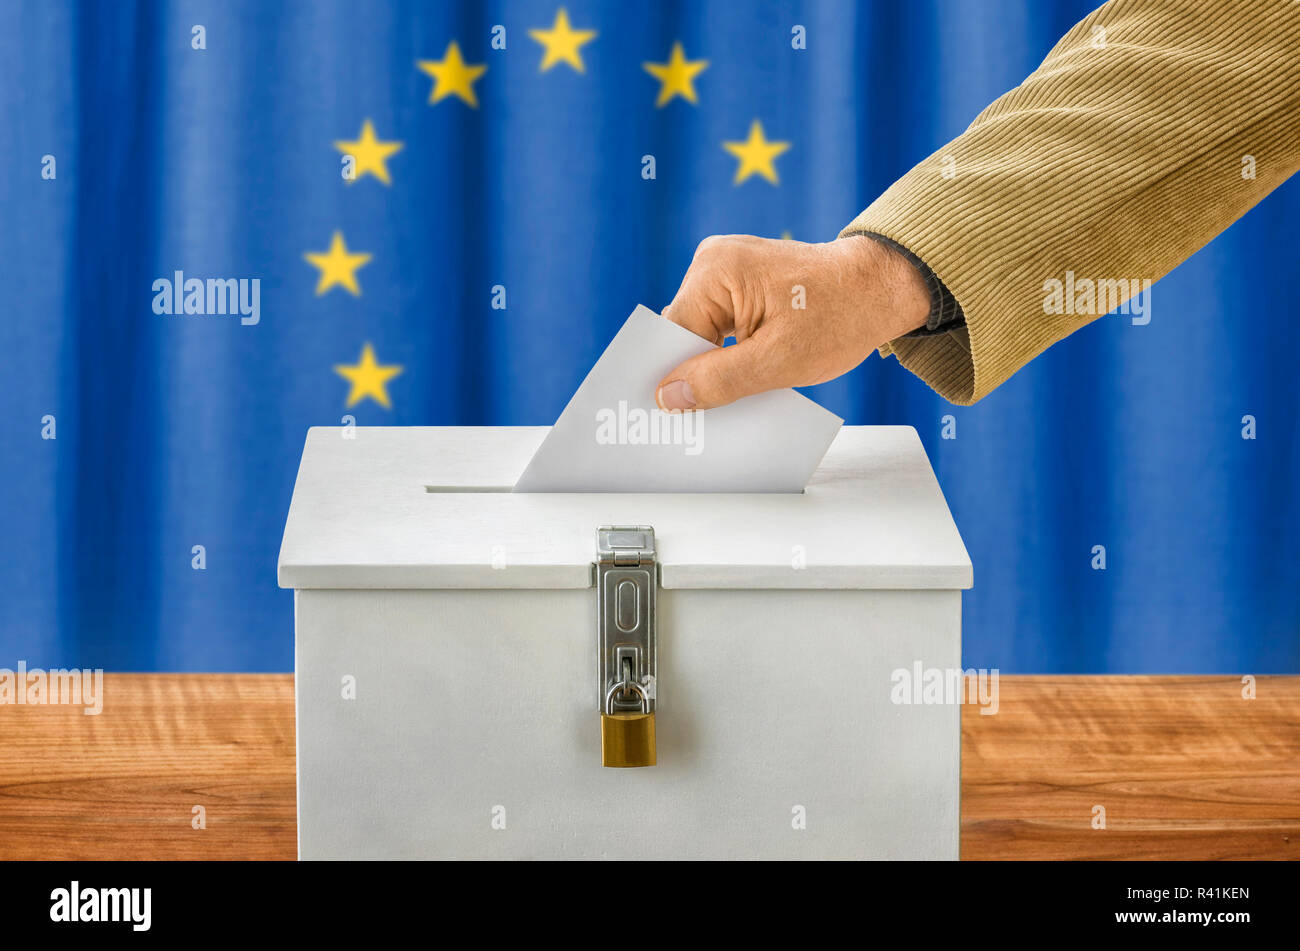 Mann wirft Stimmzettel im Wählerverzeichnis - Europäische Union Stockfoto